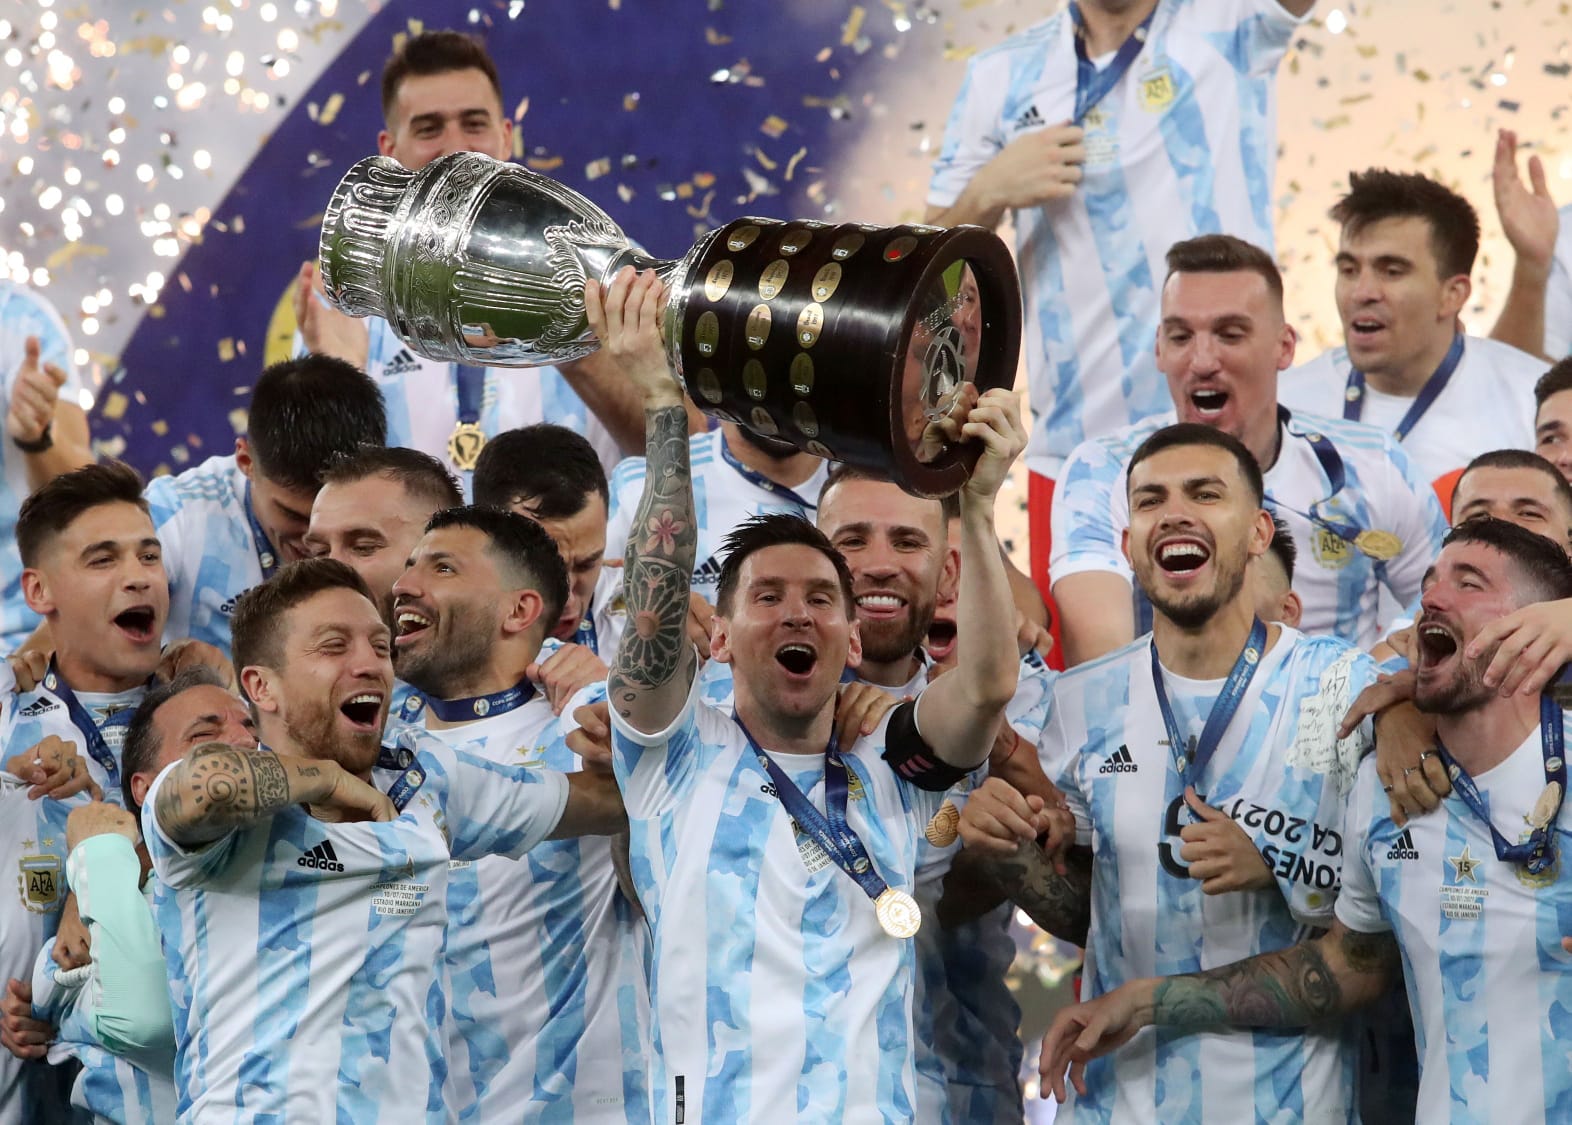 Lionel Messi y Argentina conjuraron el maleficio. Ahora, el astro ostenta un cetro que ni Diego Maradona ni Pelé consiguieron.